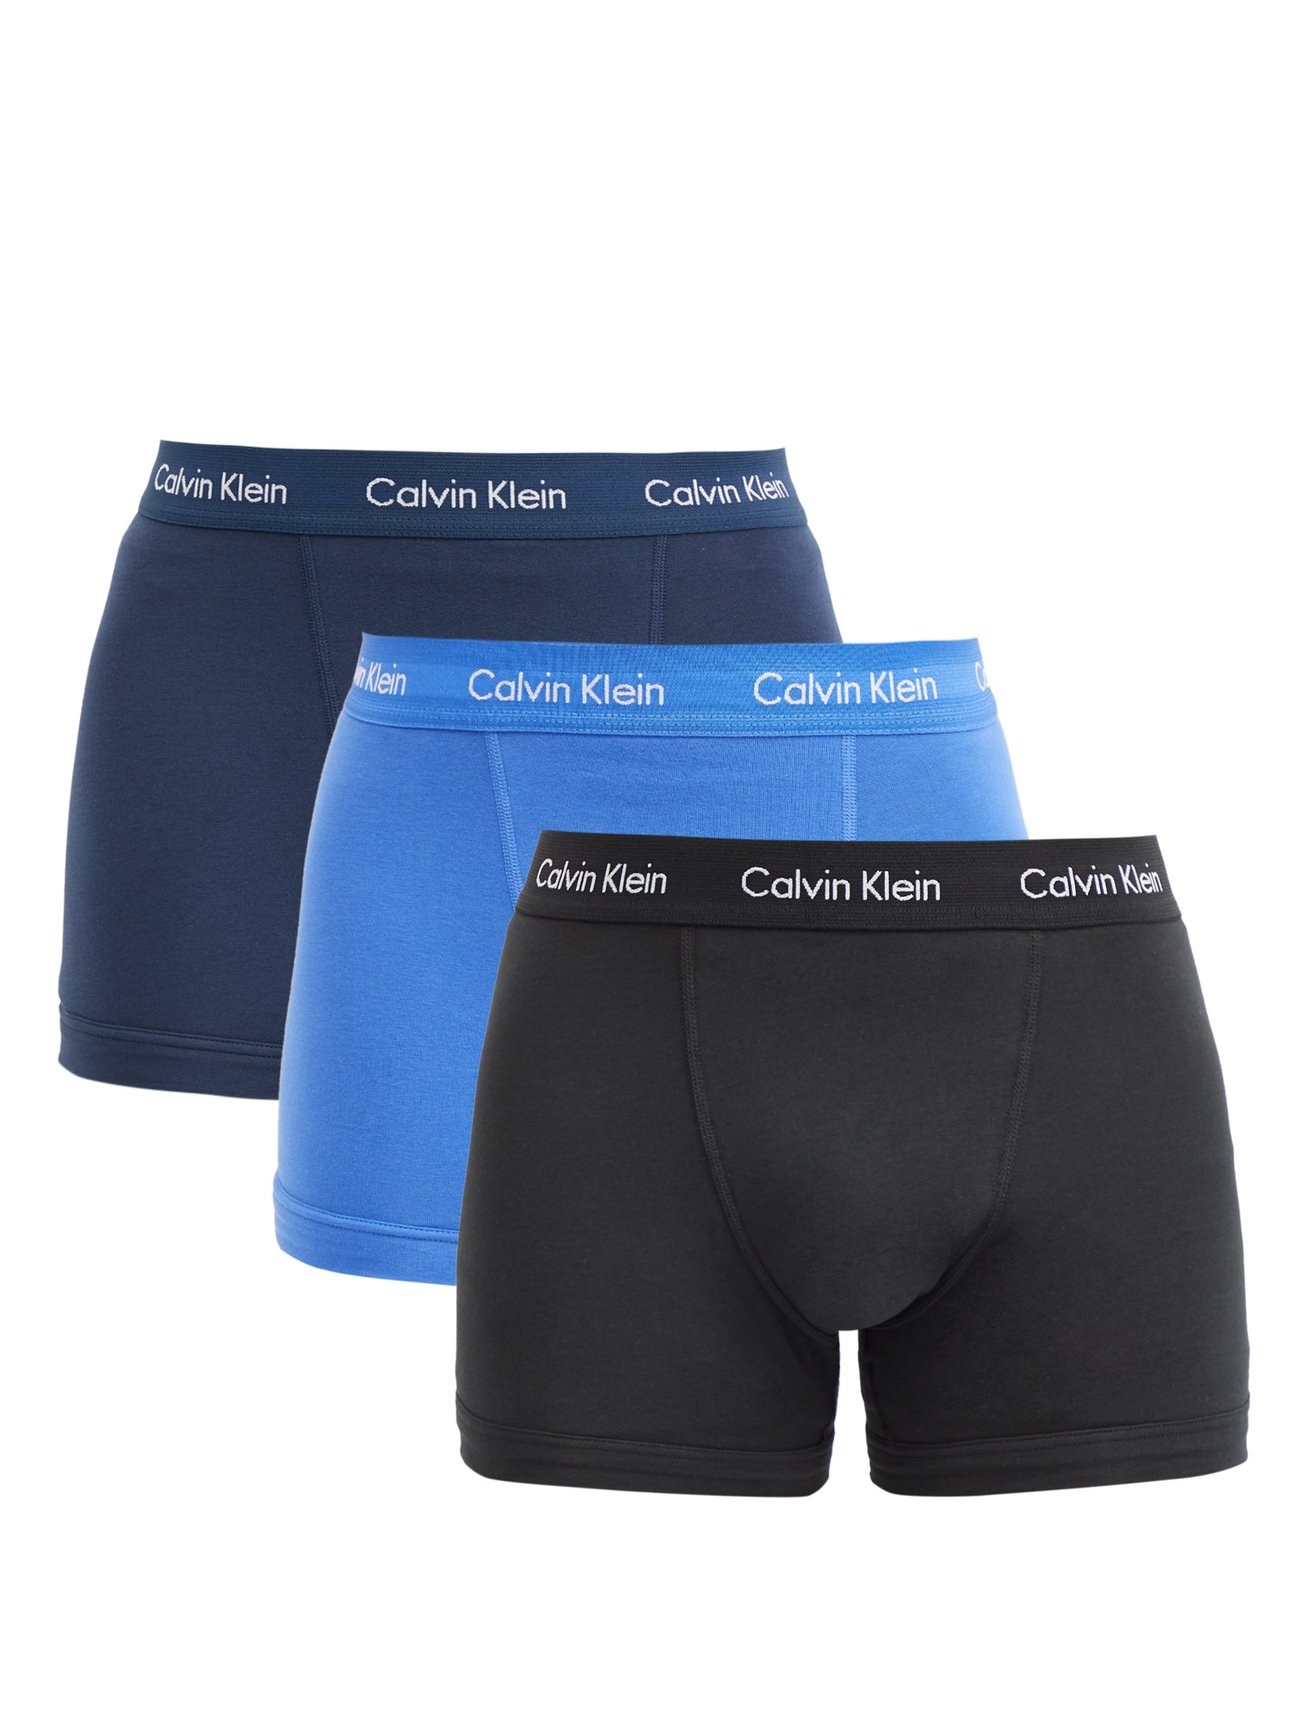 Calvin Klein Men's Cotton Classic Fit 5-Pack Boxer Brief - Blue - XL